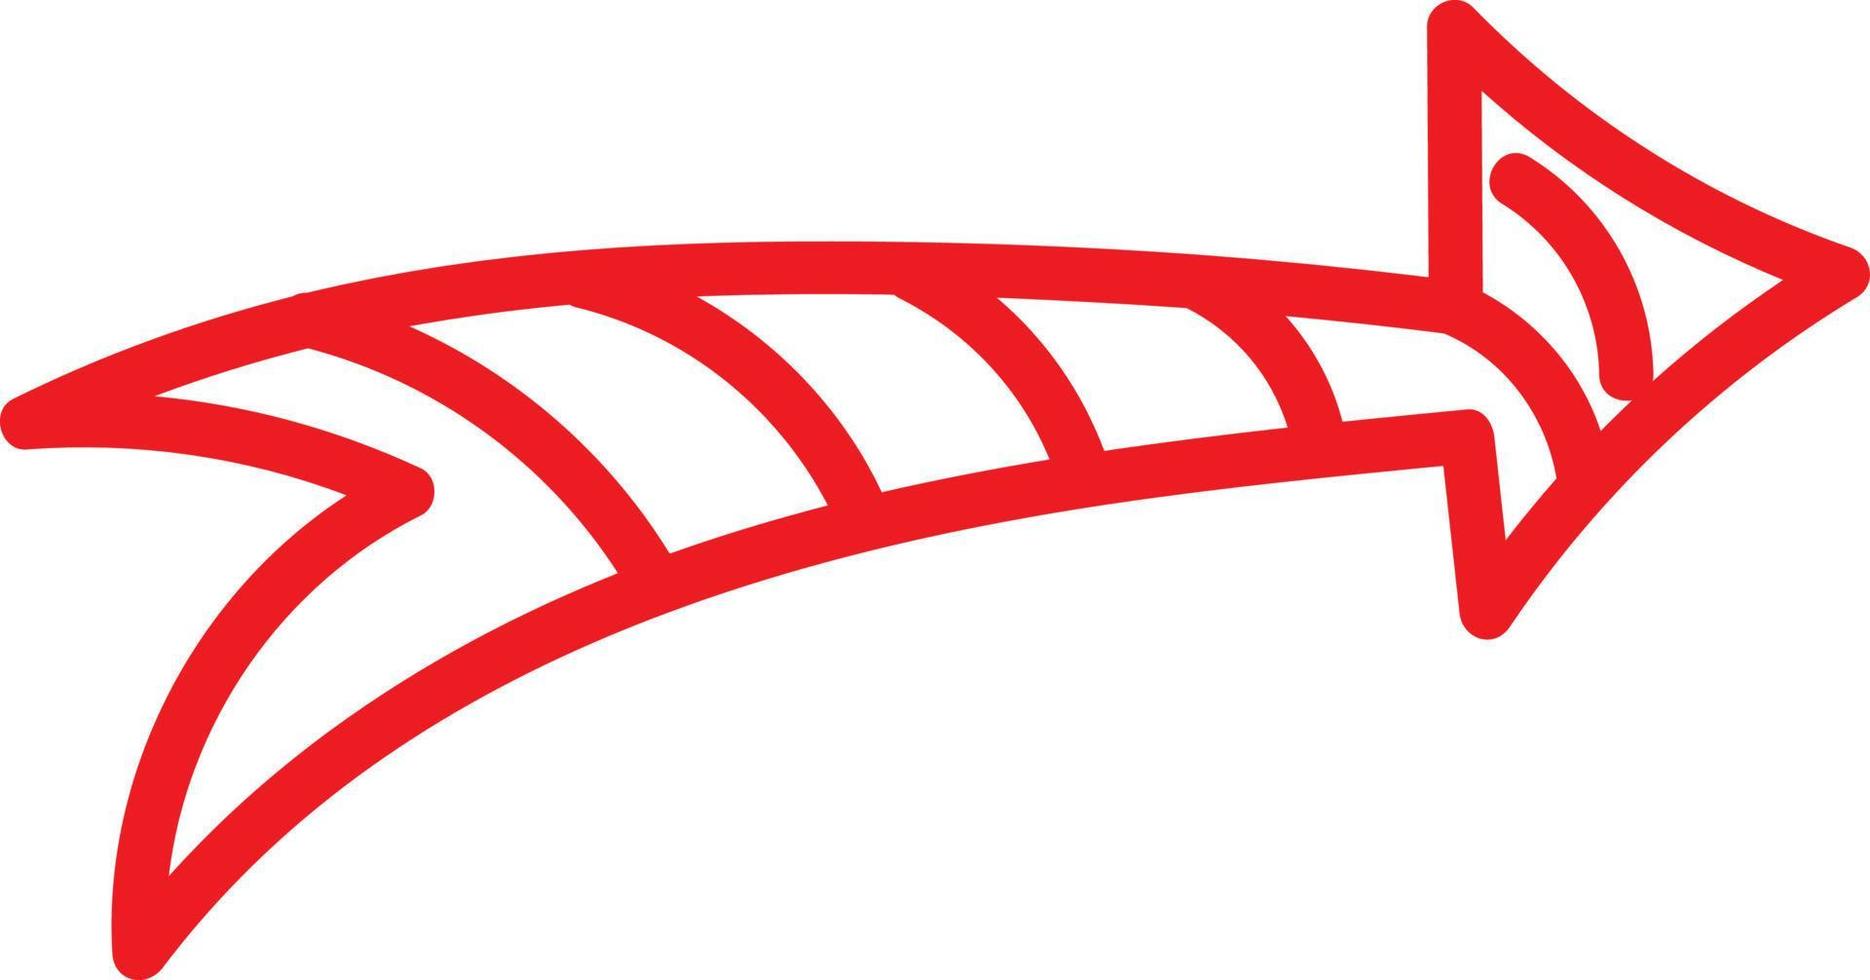 roter Pfeil mit Streifen darin zeigte nach rechts, Illustration, Vektor auf weißem Hintergrund.